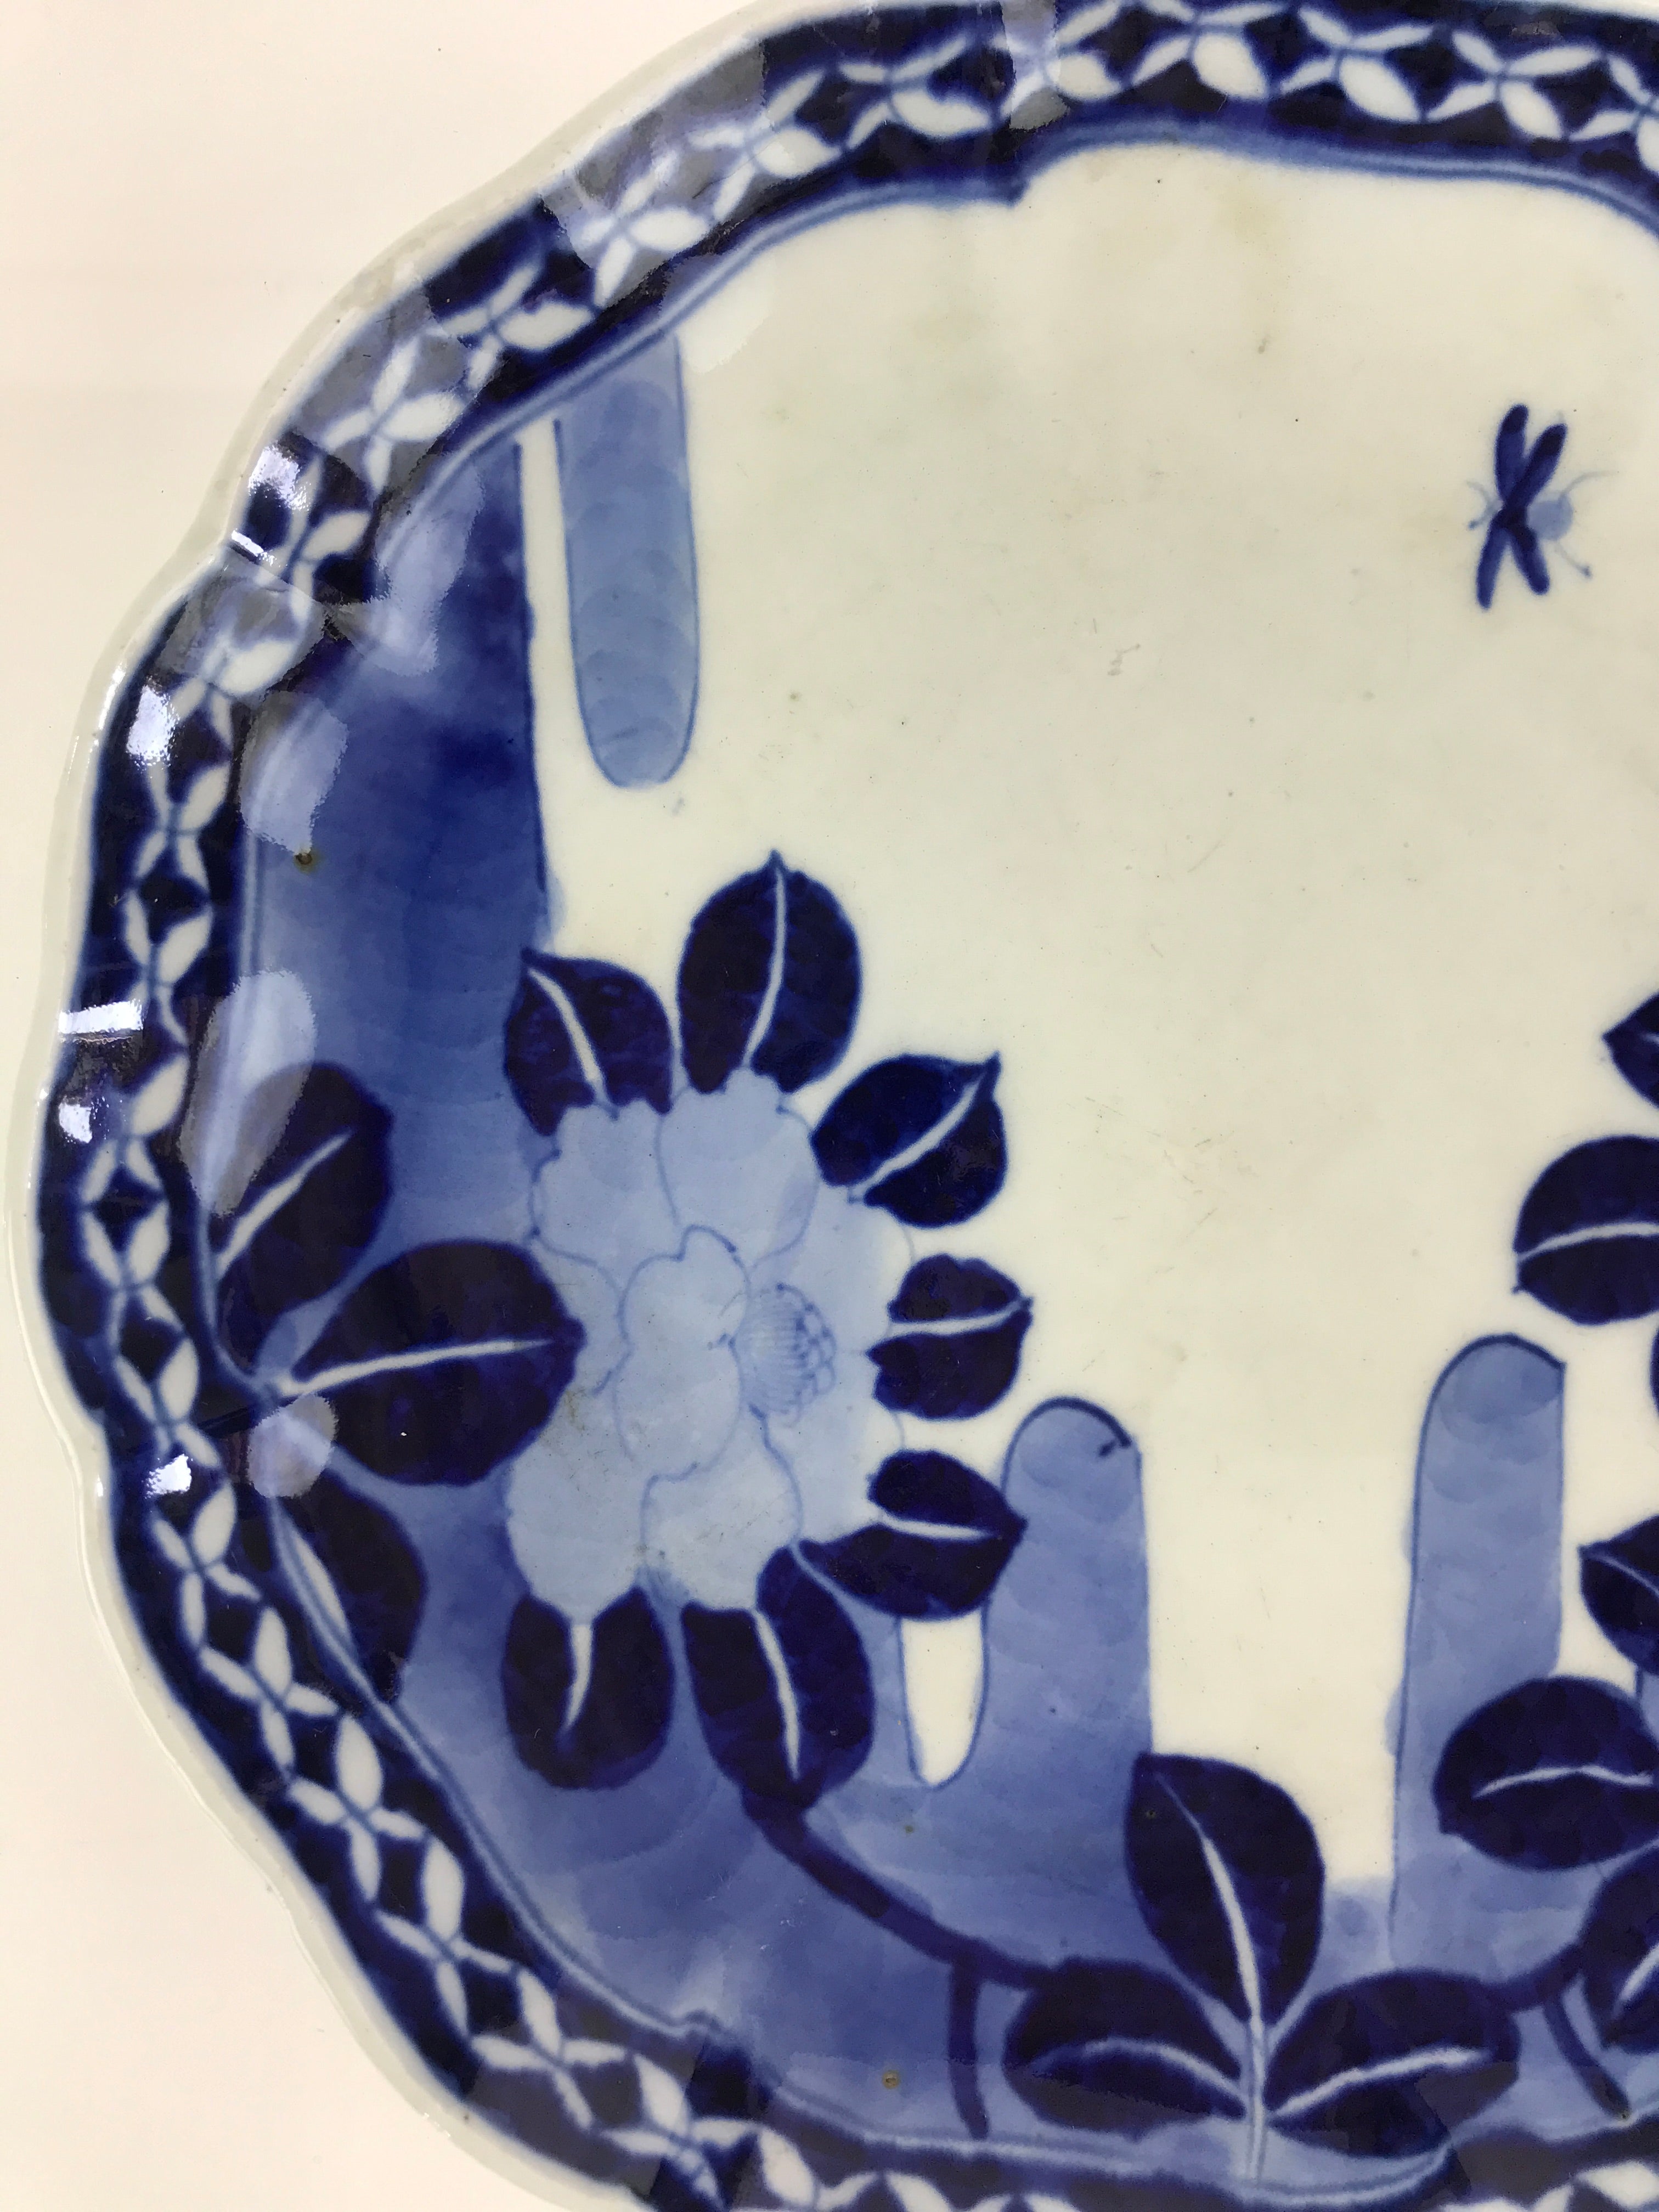 Japanese Porcelain Plate Vtg Blue Sometsuke Camellia Flower Bee Sara PY140